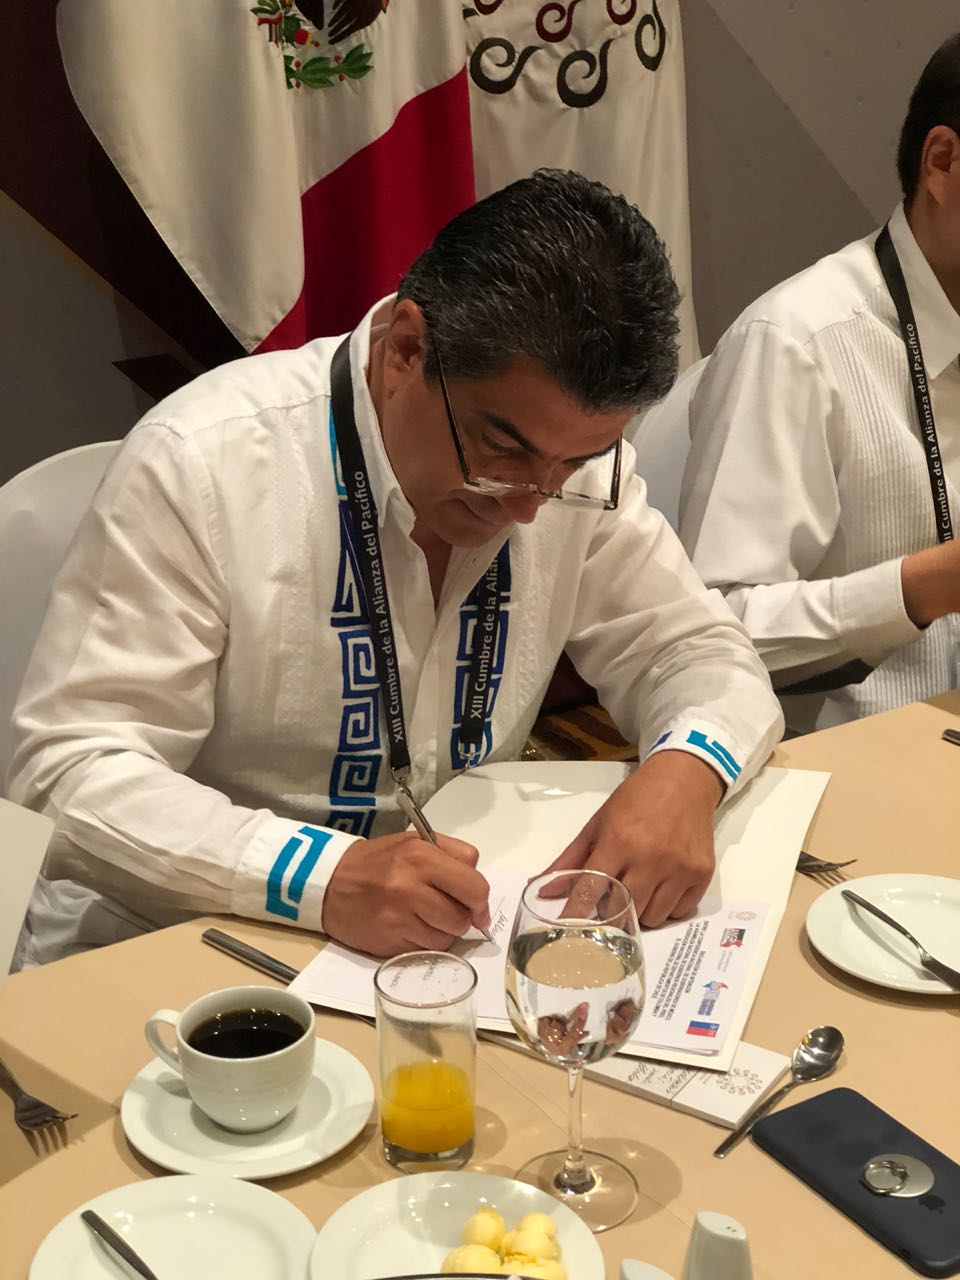 Gobernador del Quindío firmó Declaración de Apoyo entre los gobernadores de los países de la Alianza del Pacífico